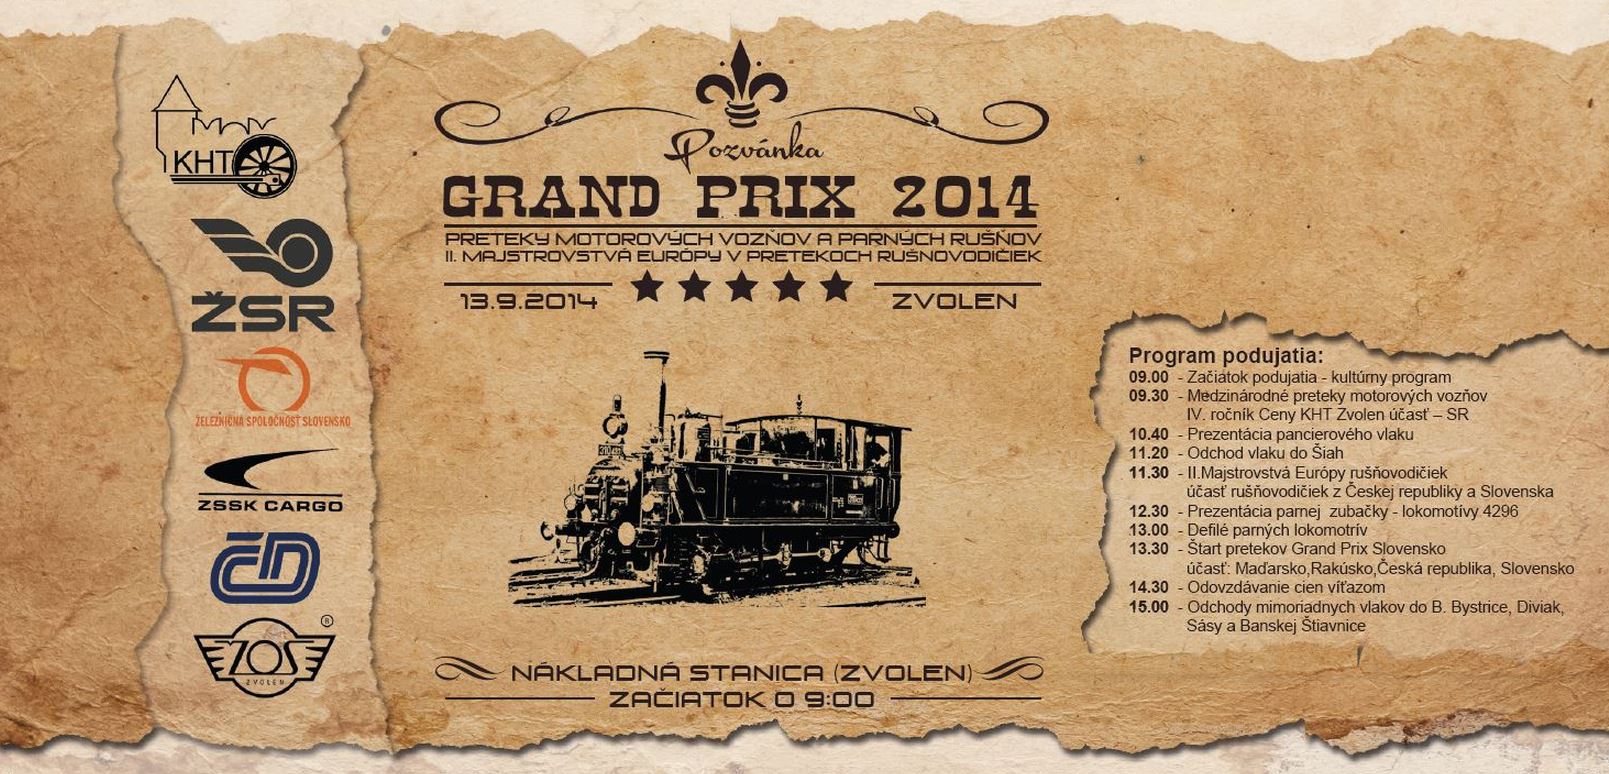 Grand Prix Slovensko 2014 Zvolen - preteky parnch lokomotv - 16. ronk